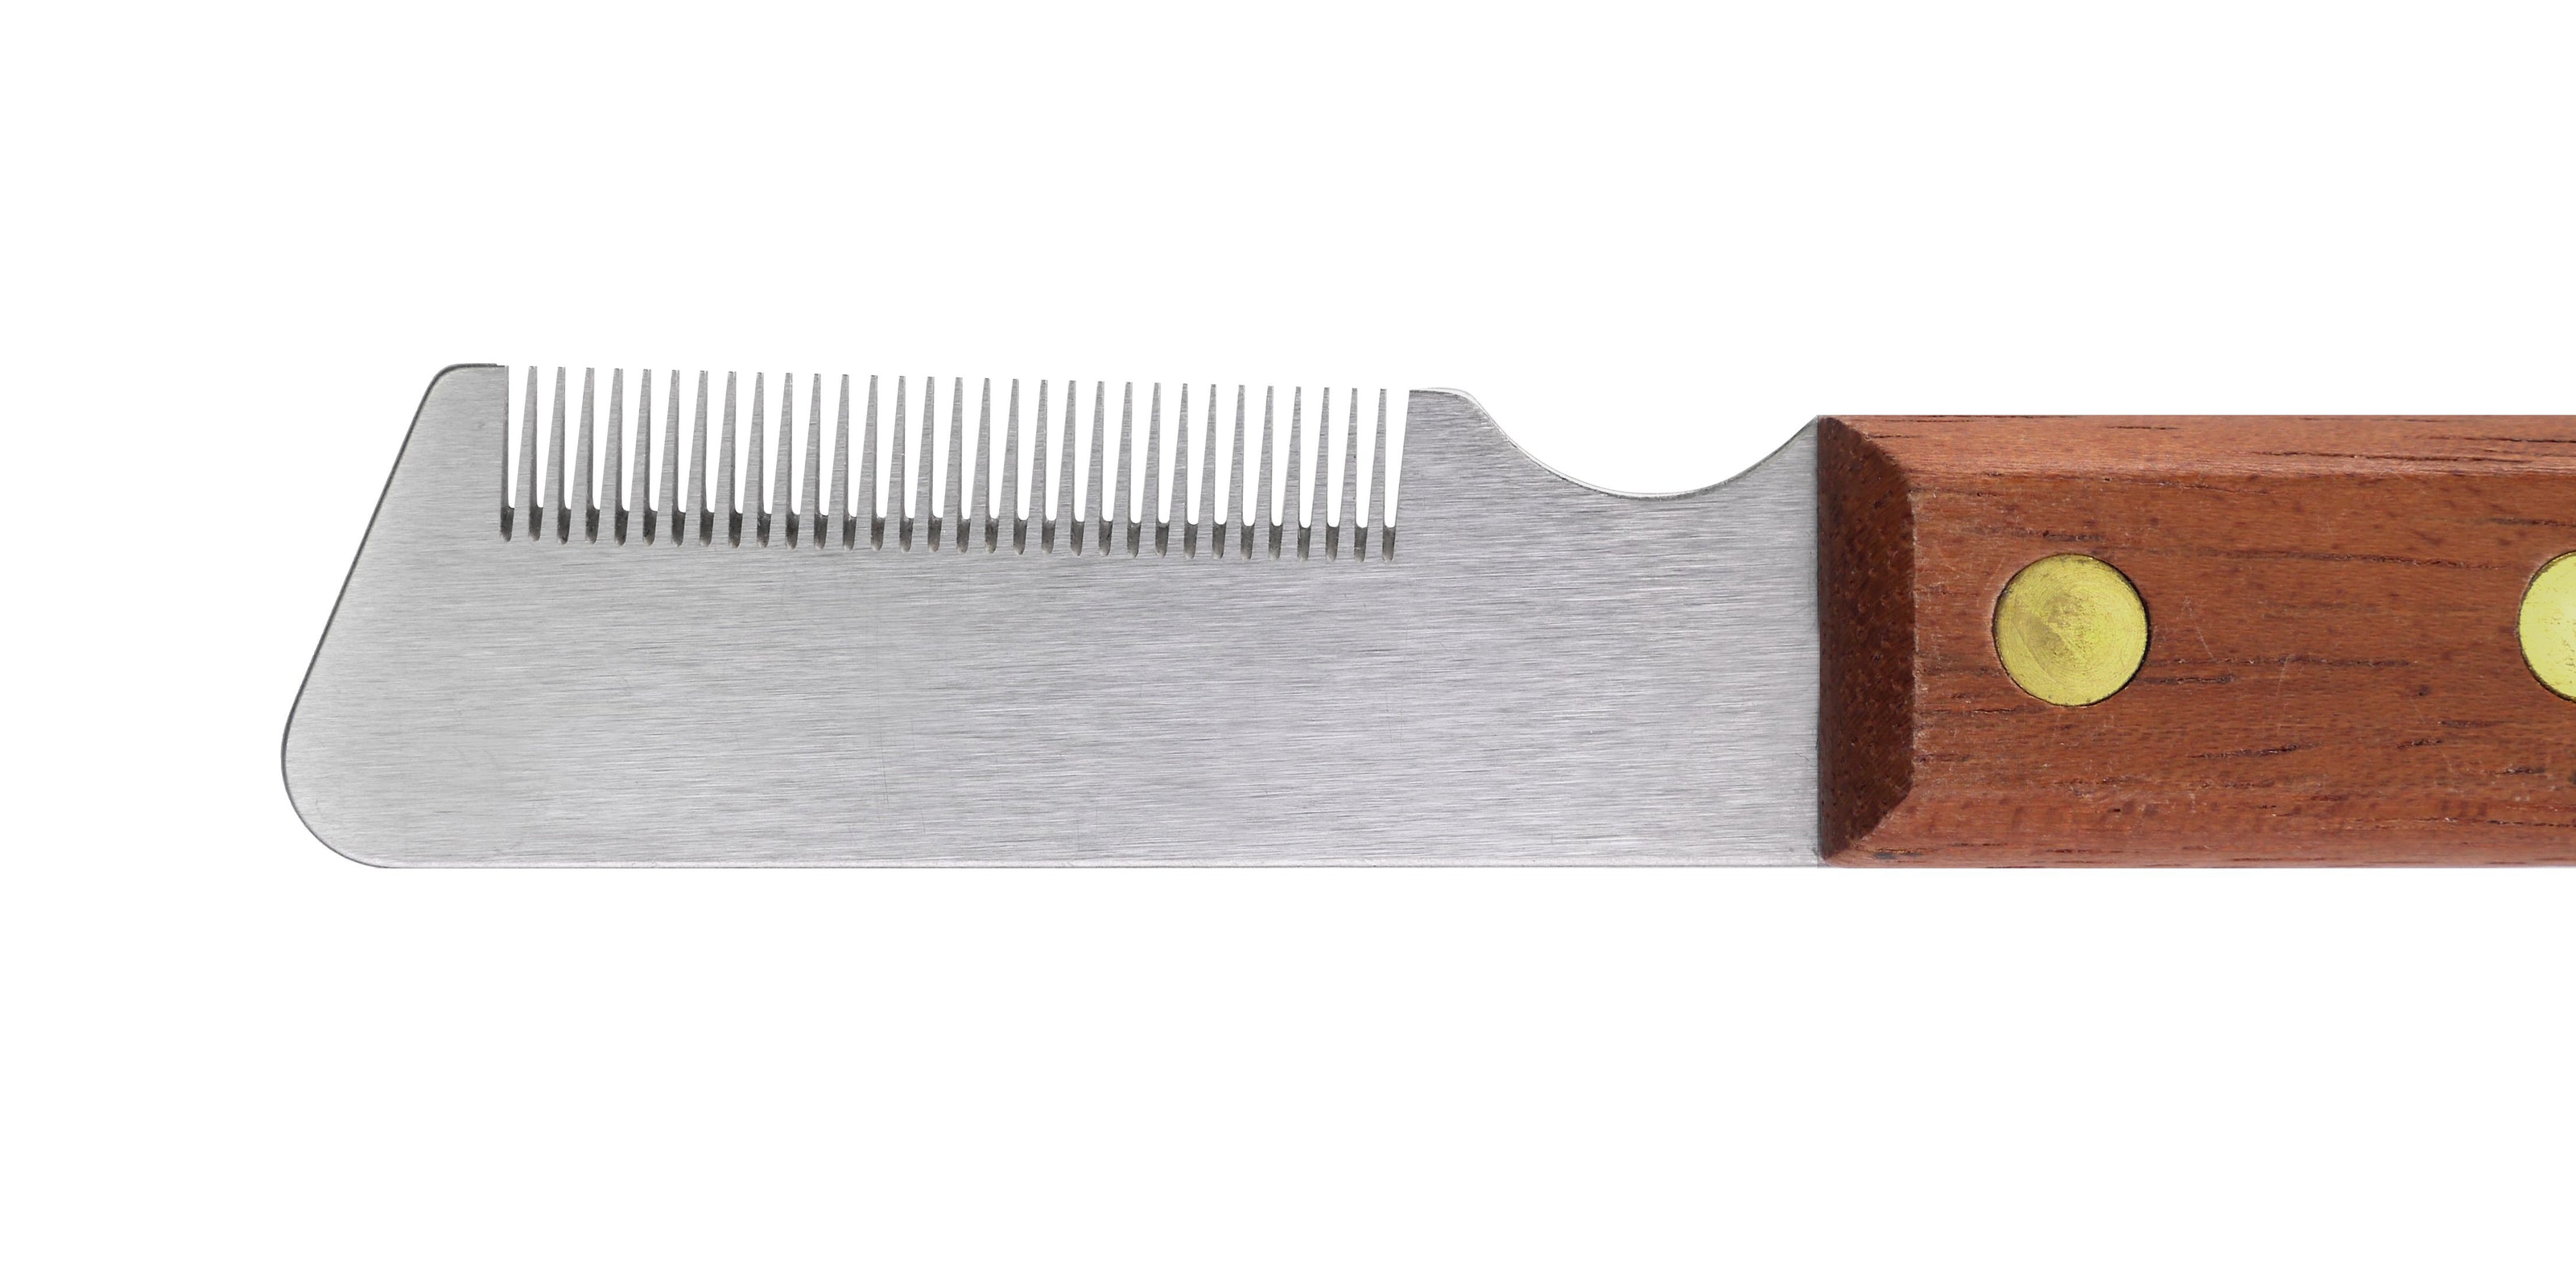 Artero Stripping Knife - Thinner for Medium Density Coats (P334)